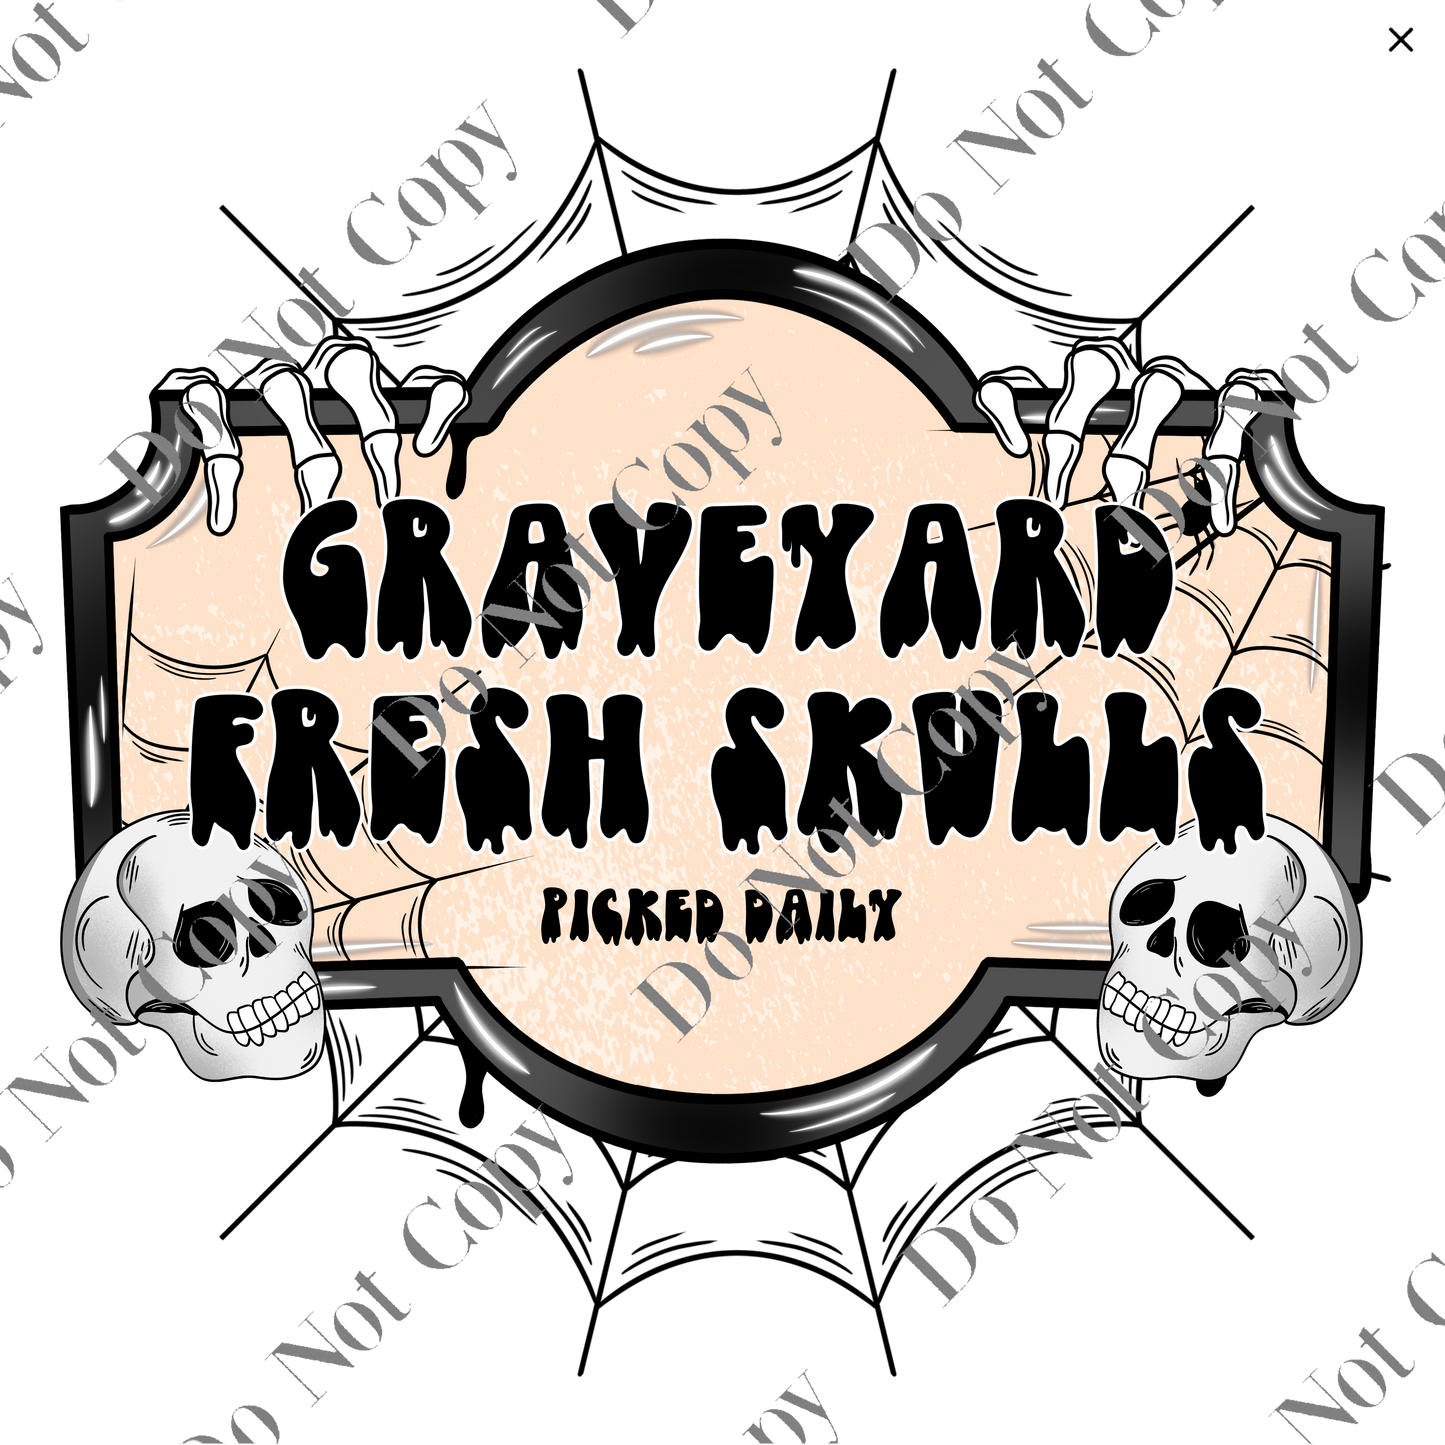 Graveyard Skulls